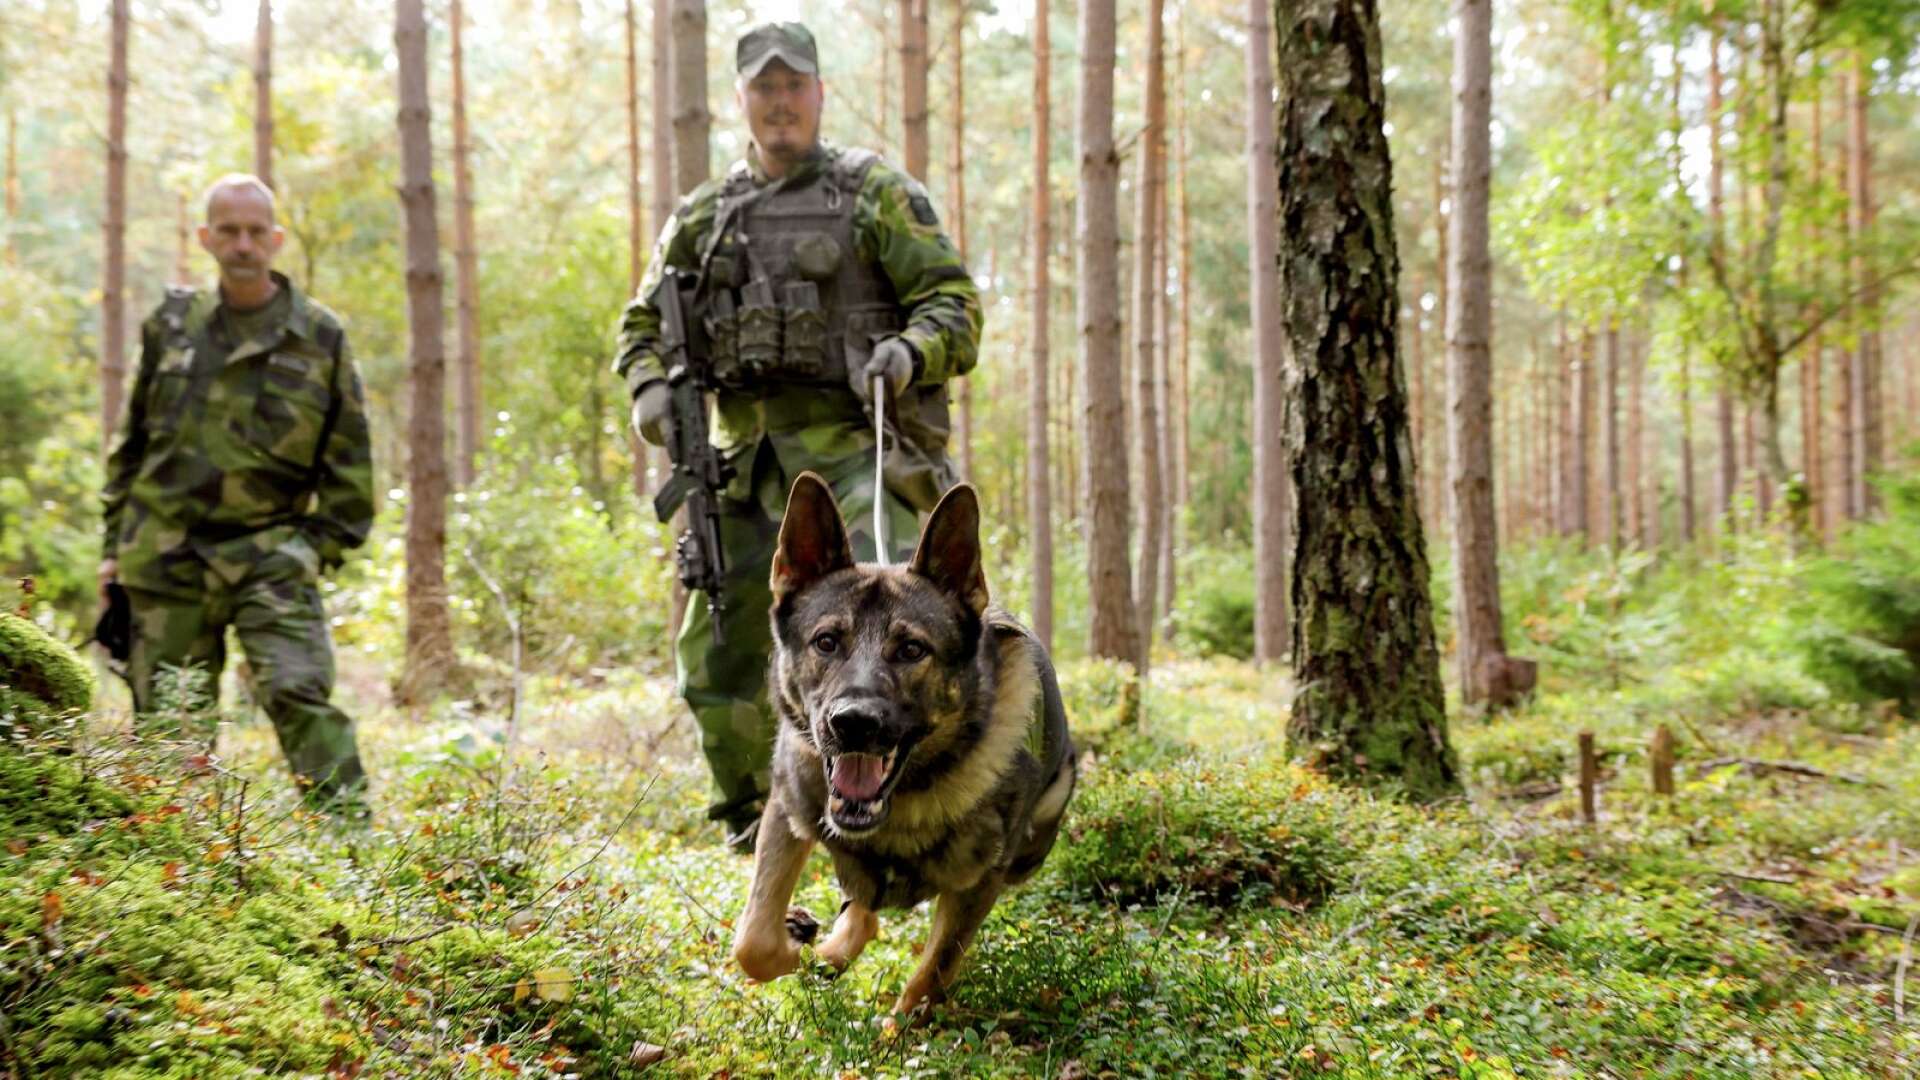 F7-hundföaren Tim Pettersson och schäfern Night med hunddressören Peter Franzén i bakgrunden. En övning har precis genomförts där målet var att spåra rätt på en figurant i skogen.